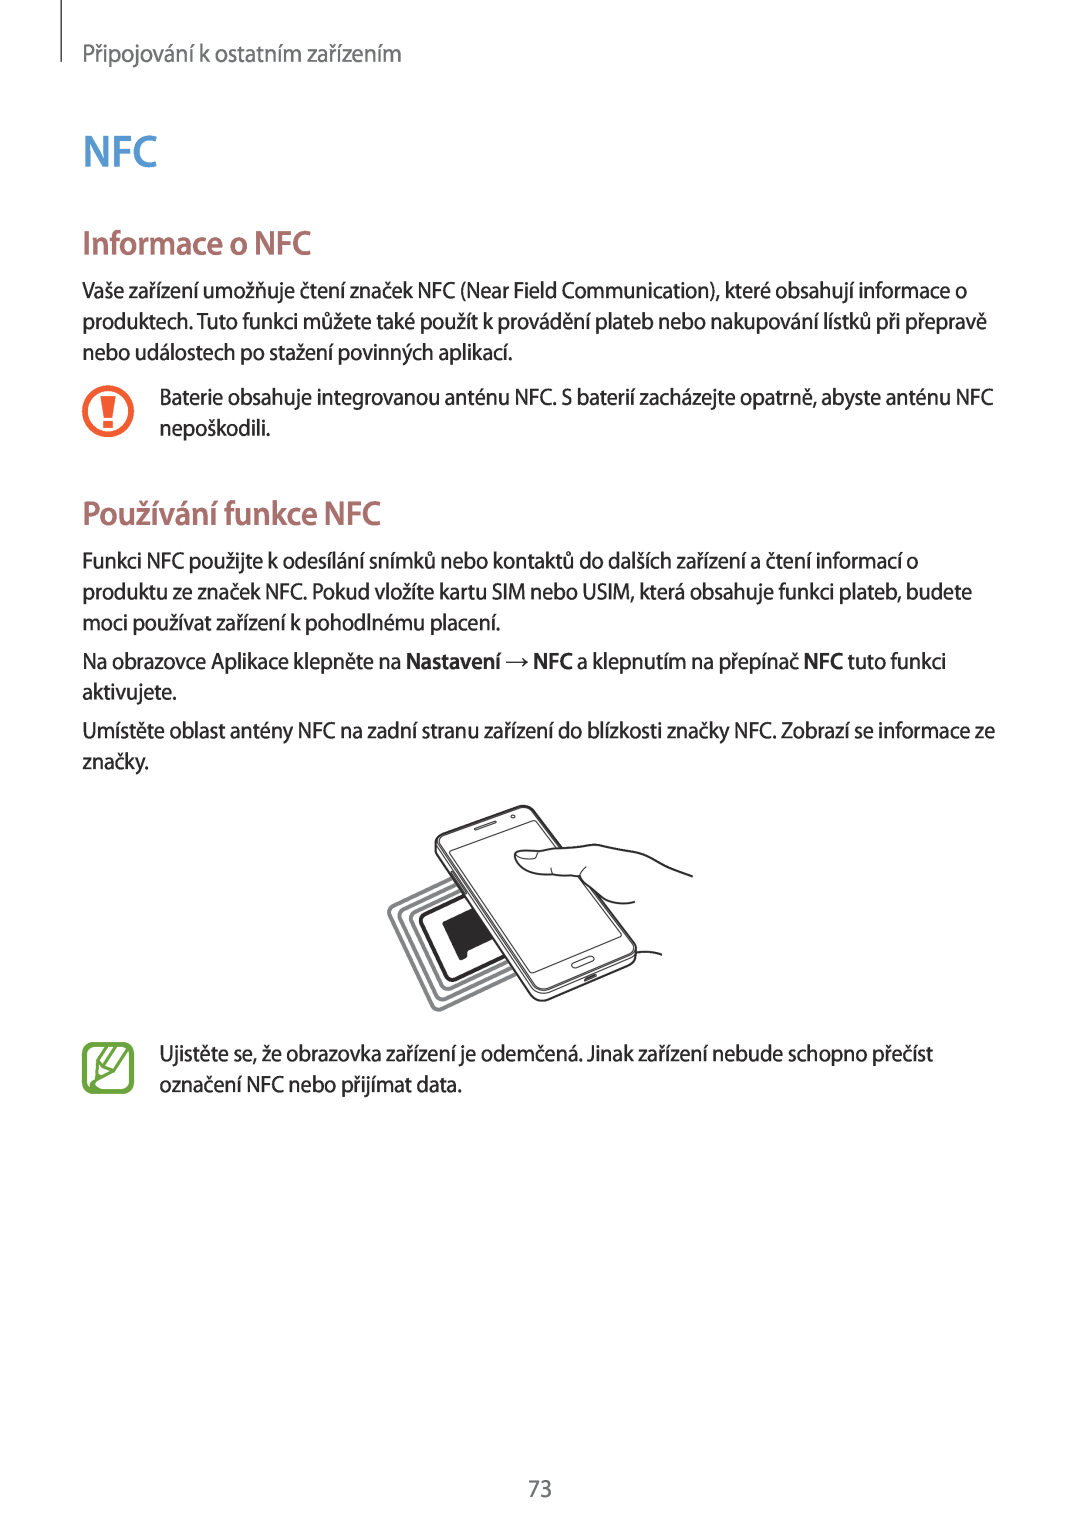 Samsung SM-G530FZAAUPC, SM-G530FZWAPRT manual Informace o NFC, Používání funkce NFC, Připojování k ostatním zařízením 